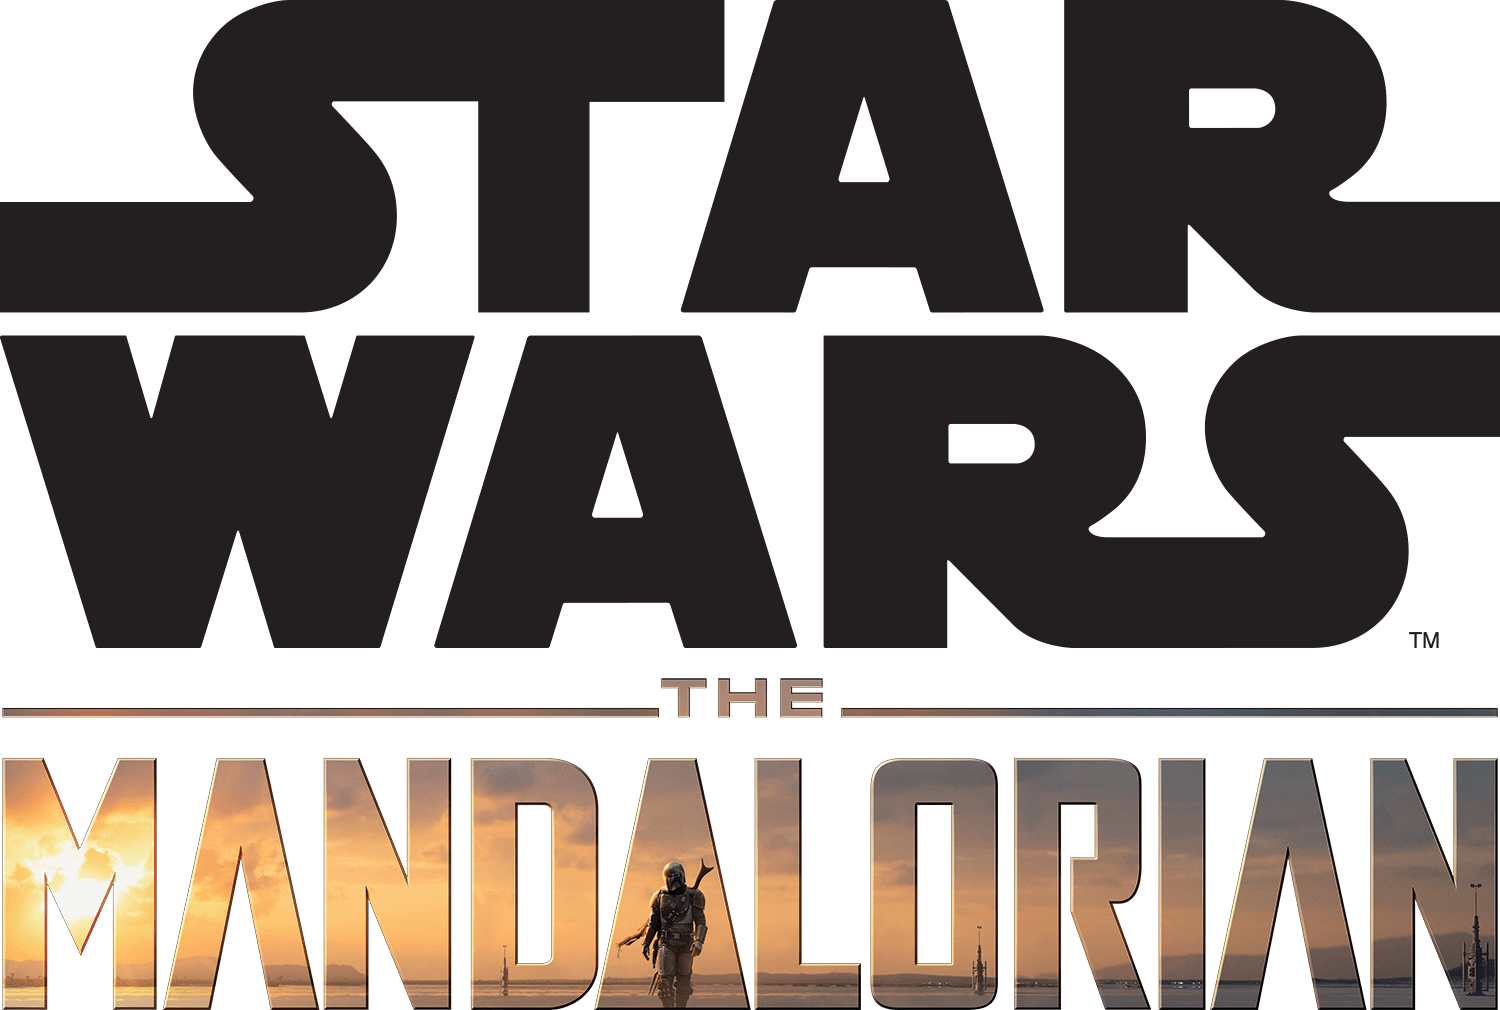 The Mandalorian™